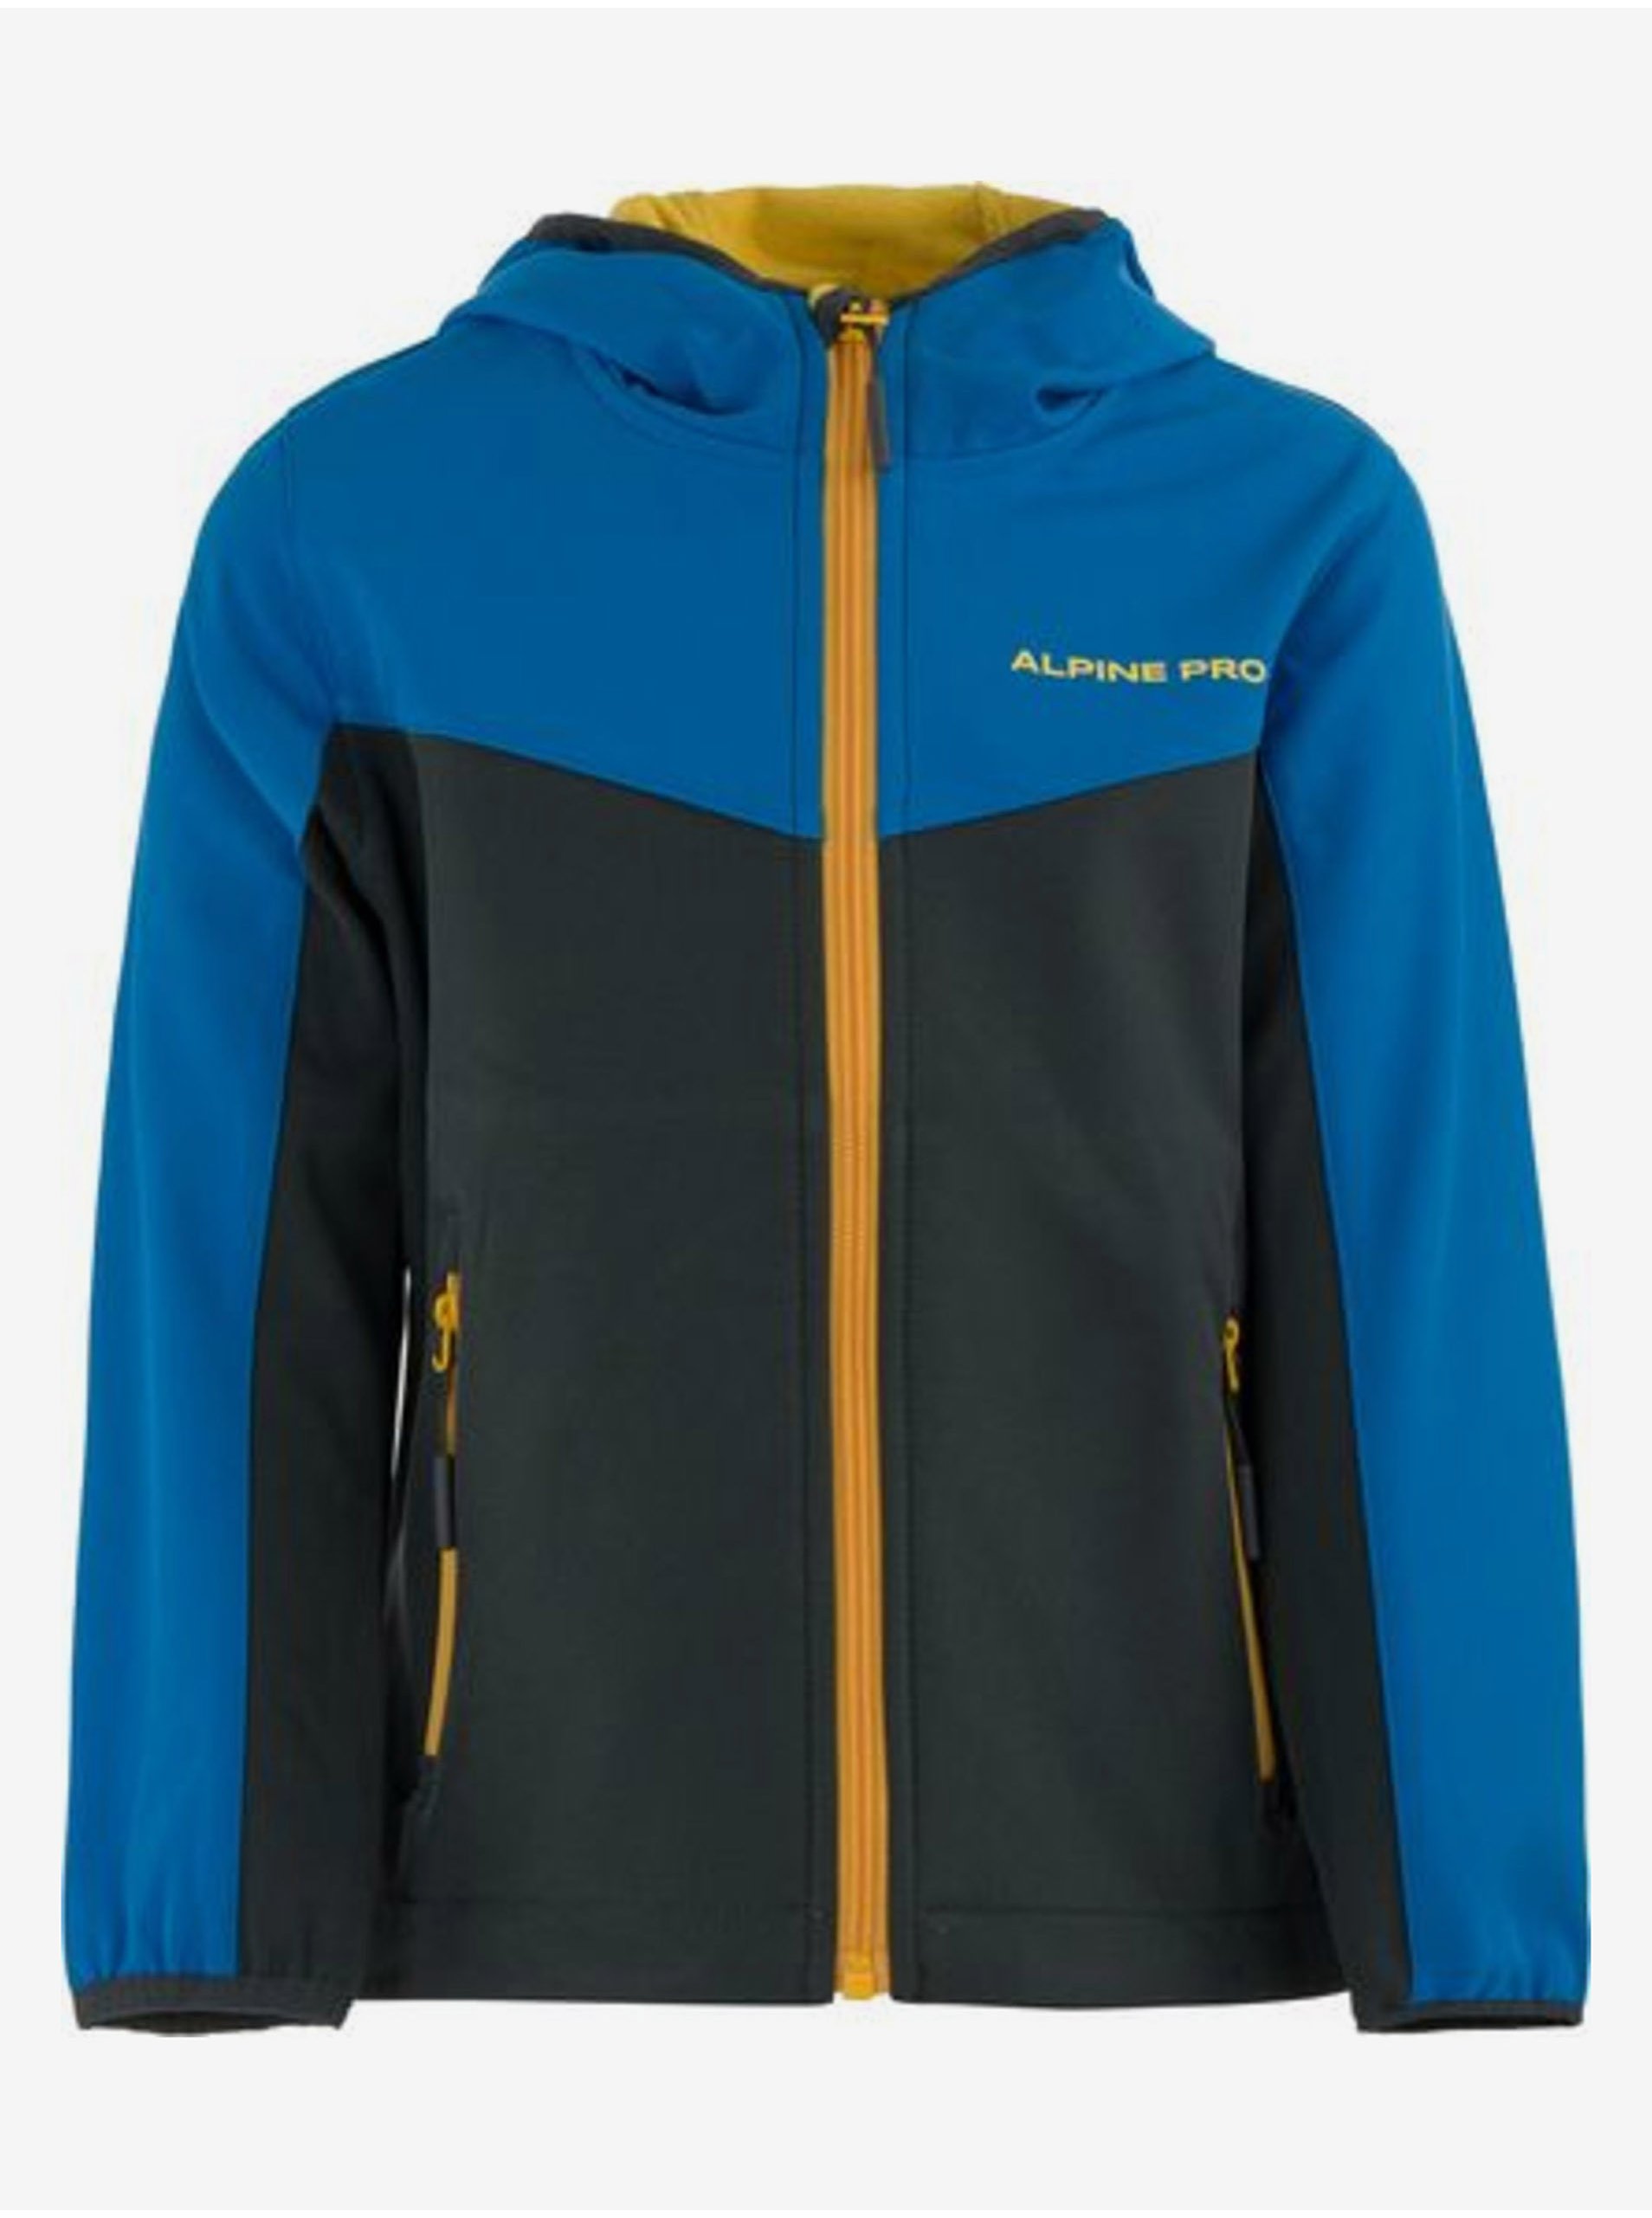 E-shop Modro-černá dětská lyžařská bunda ALPINE PRO HOLDO